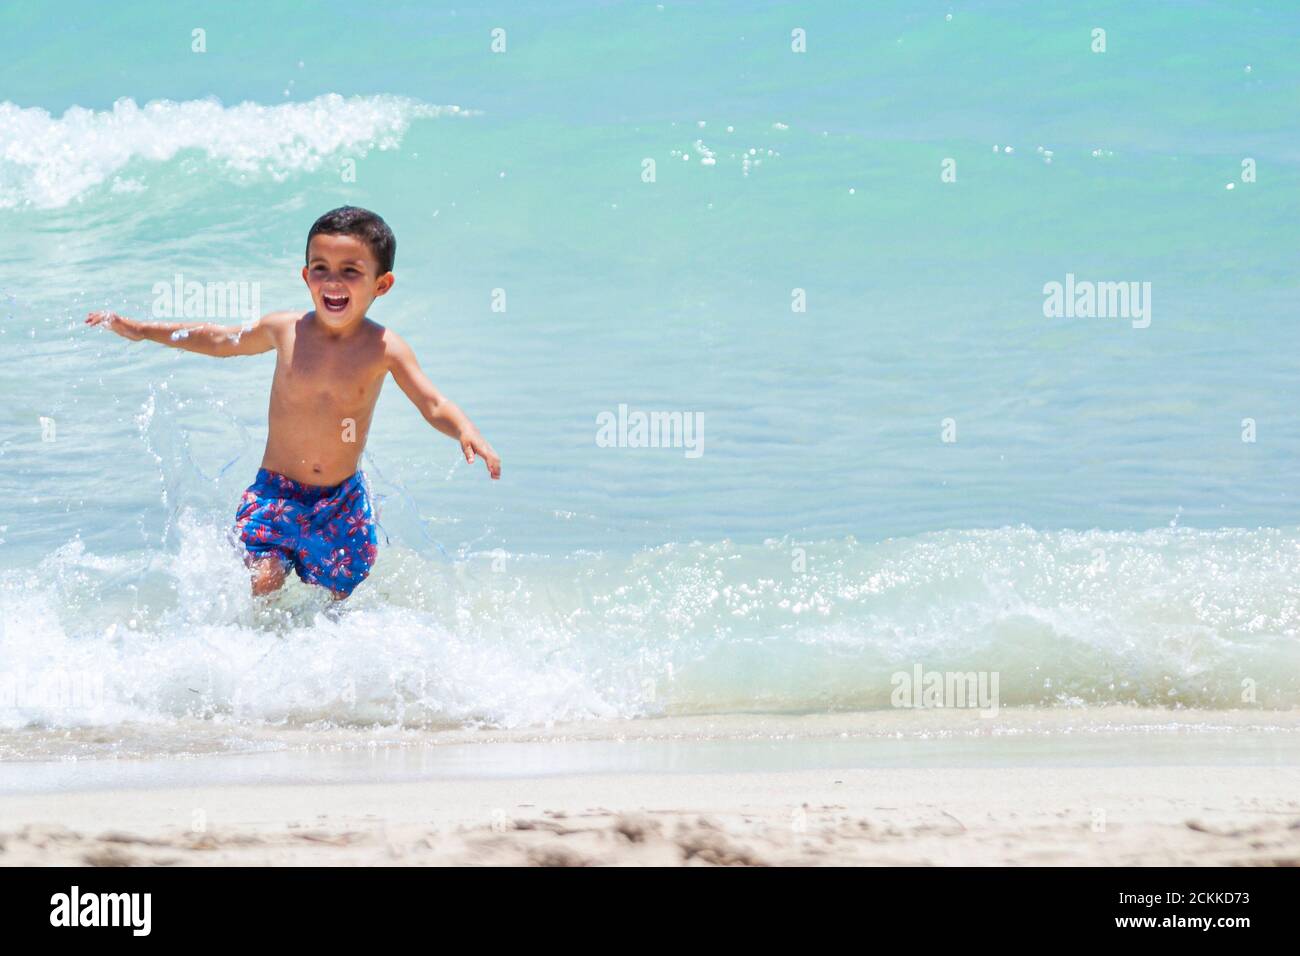 Miami Beach Florida, öffentliche Küste am Atlantik, Küste, hispanischer Mann, junge Jungen, Kind Kind Junge Jugendliche Jugendliche Jugendliche spielen Spaß im Surfen Stockfoto